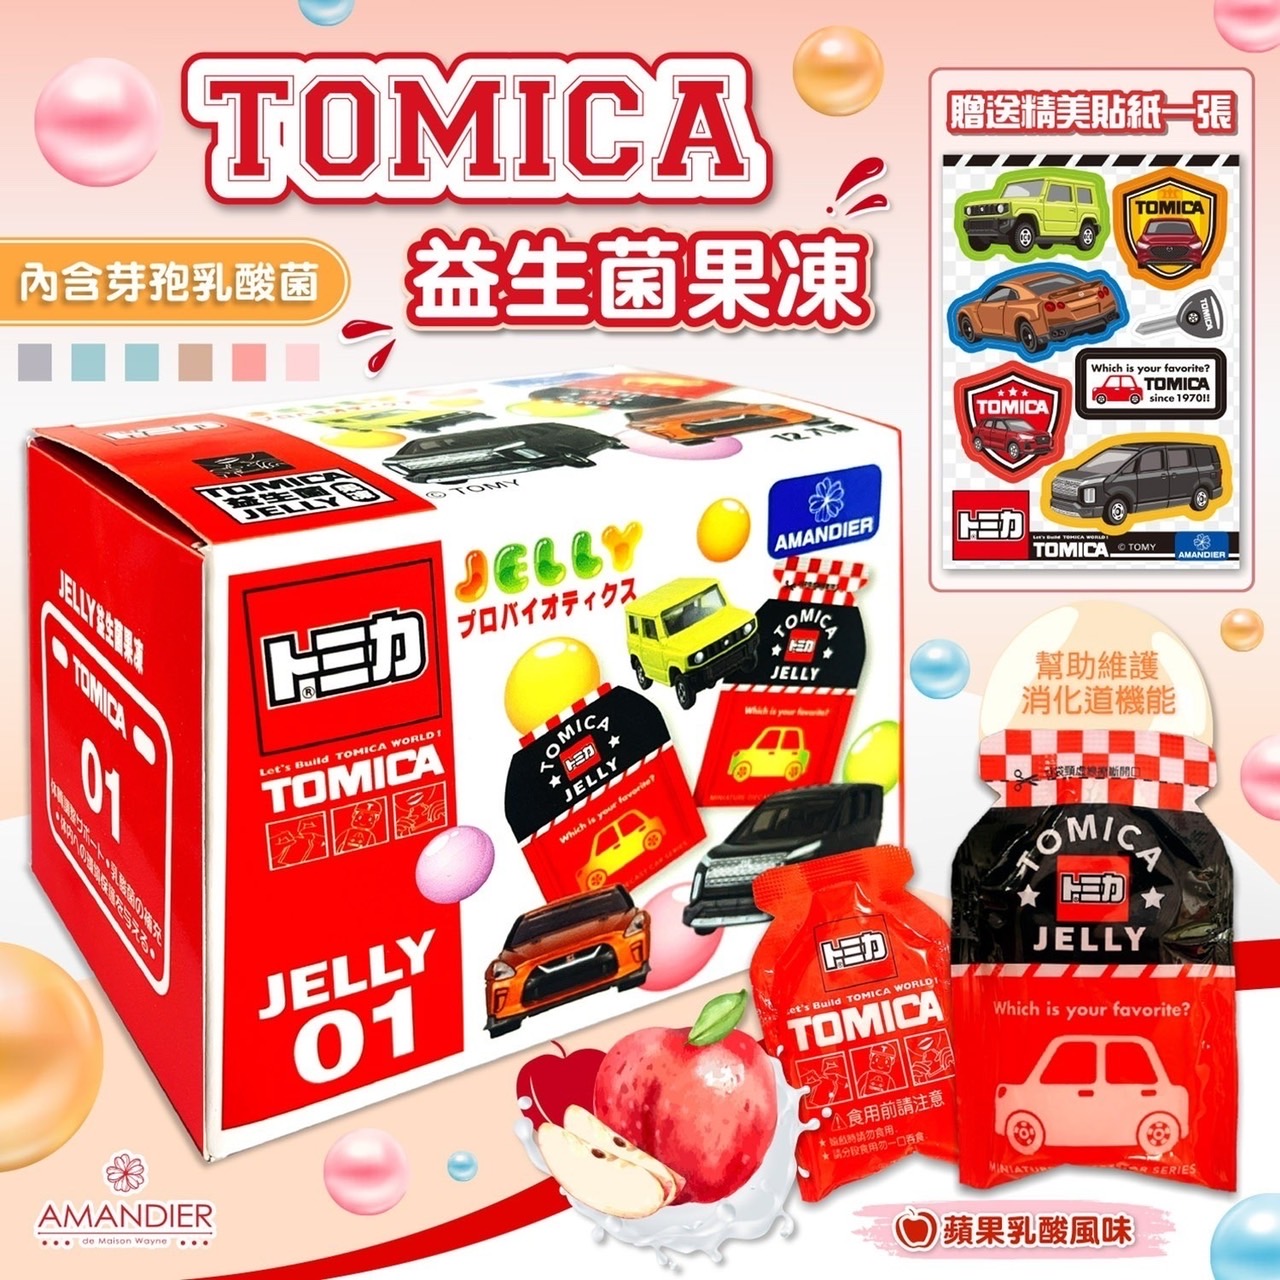 袋型果凍盒 蘋果乳酸風味 附贈貼紙 240g-トミカ TOMICA 臺灣製造